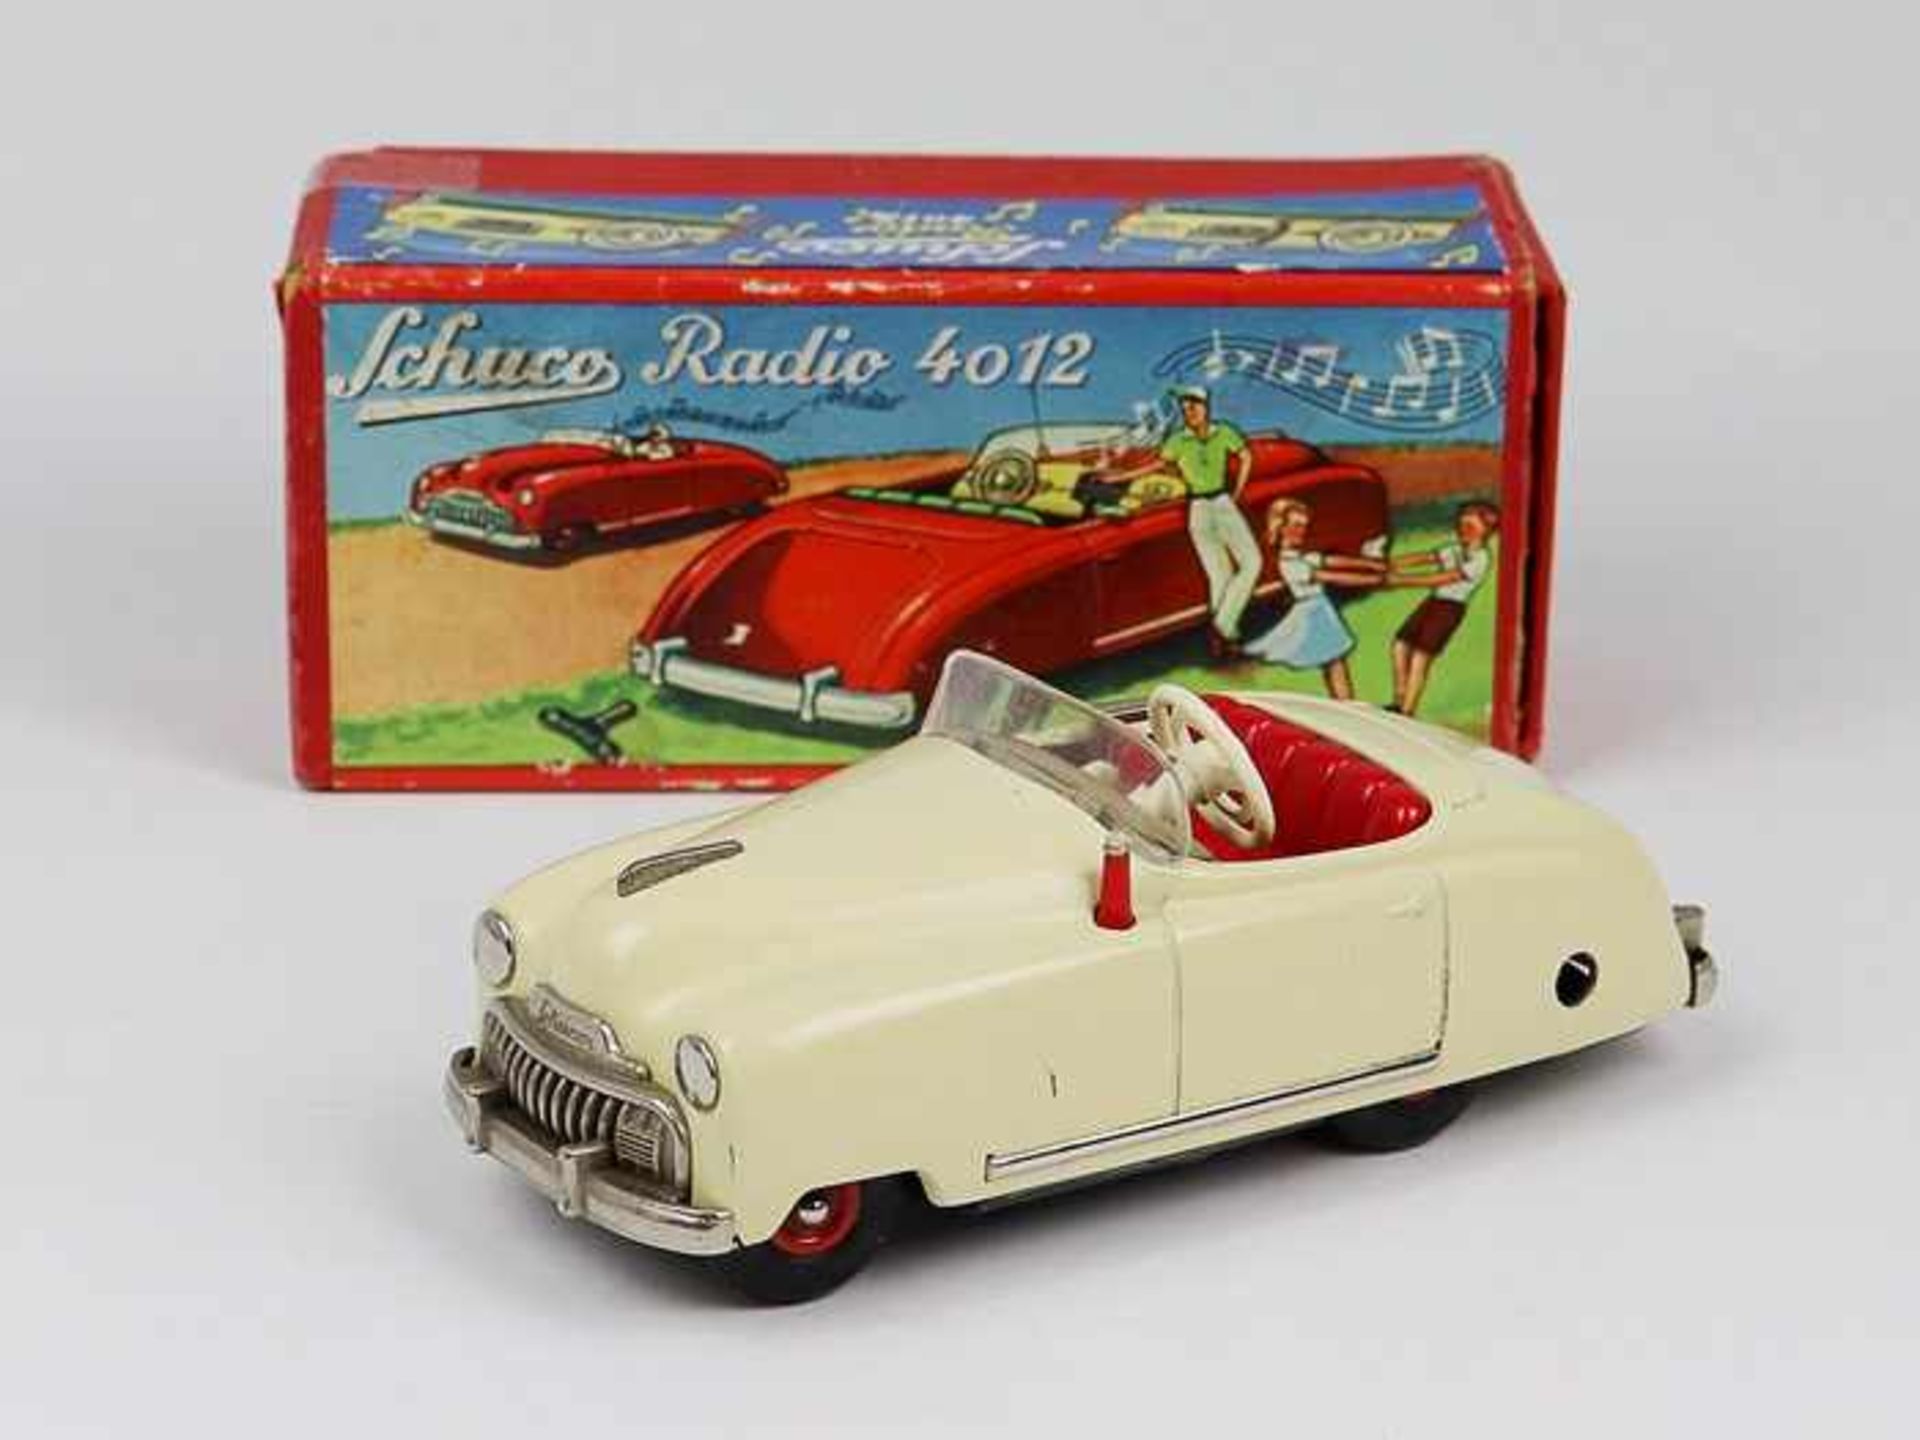 Schuco - Blechspielzeug1950er J., Auto Radio 4012, Made in U.S.-Zone Germany, beiges Cabrio aus - Bild 2 aus 2